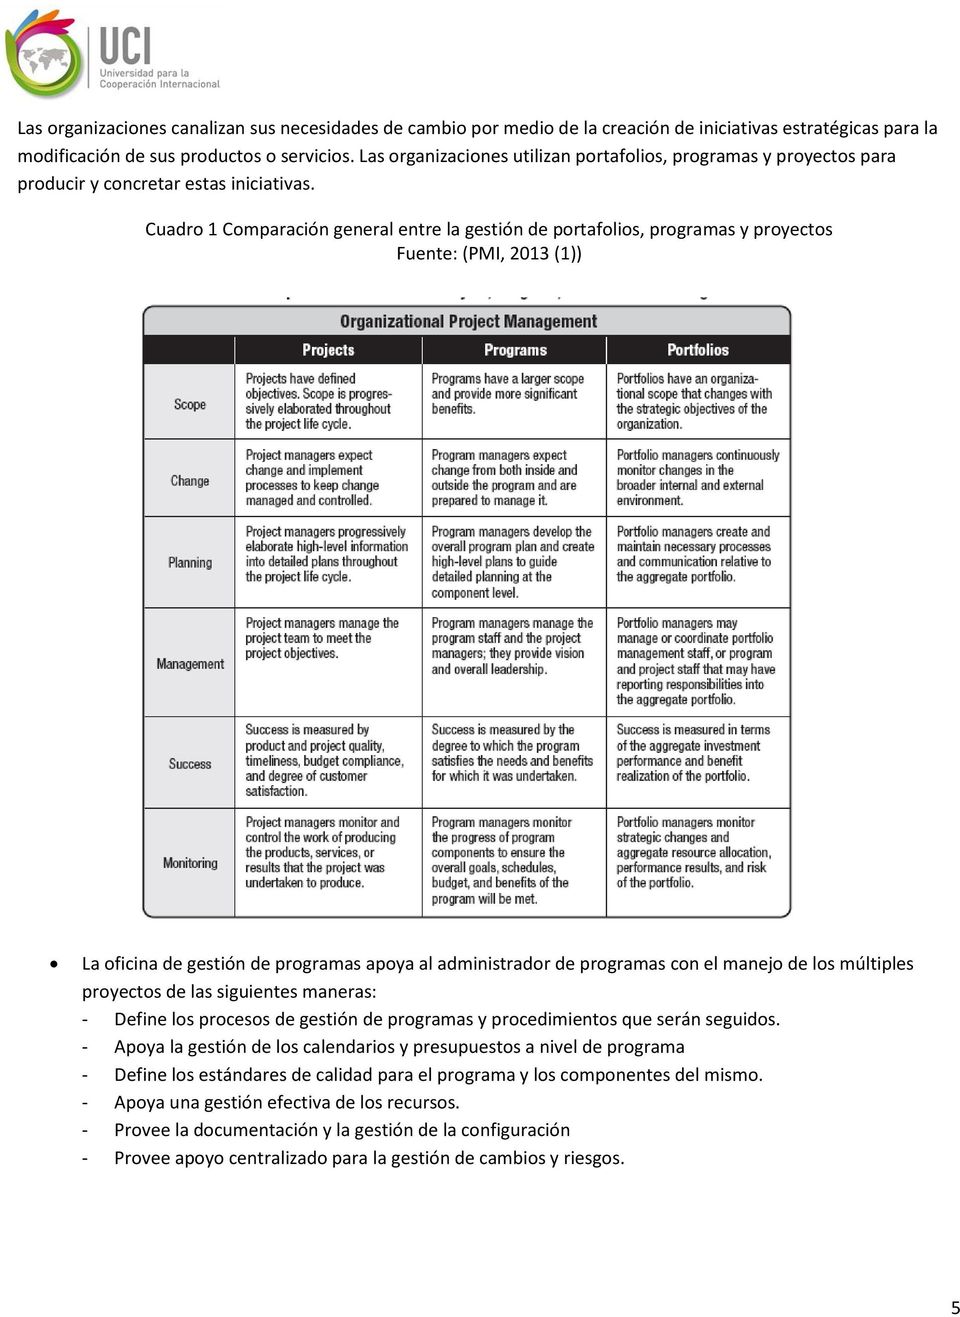 Cuadro 1 Comparación general entre la gestión de portafolios, programas y proyectos Fuente: (PMI, 2013 (1)) La oficina de gestión de programas apoya al administrador de programas con el manejo de los